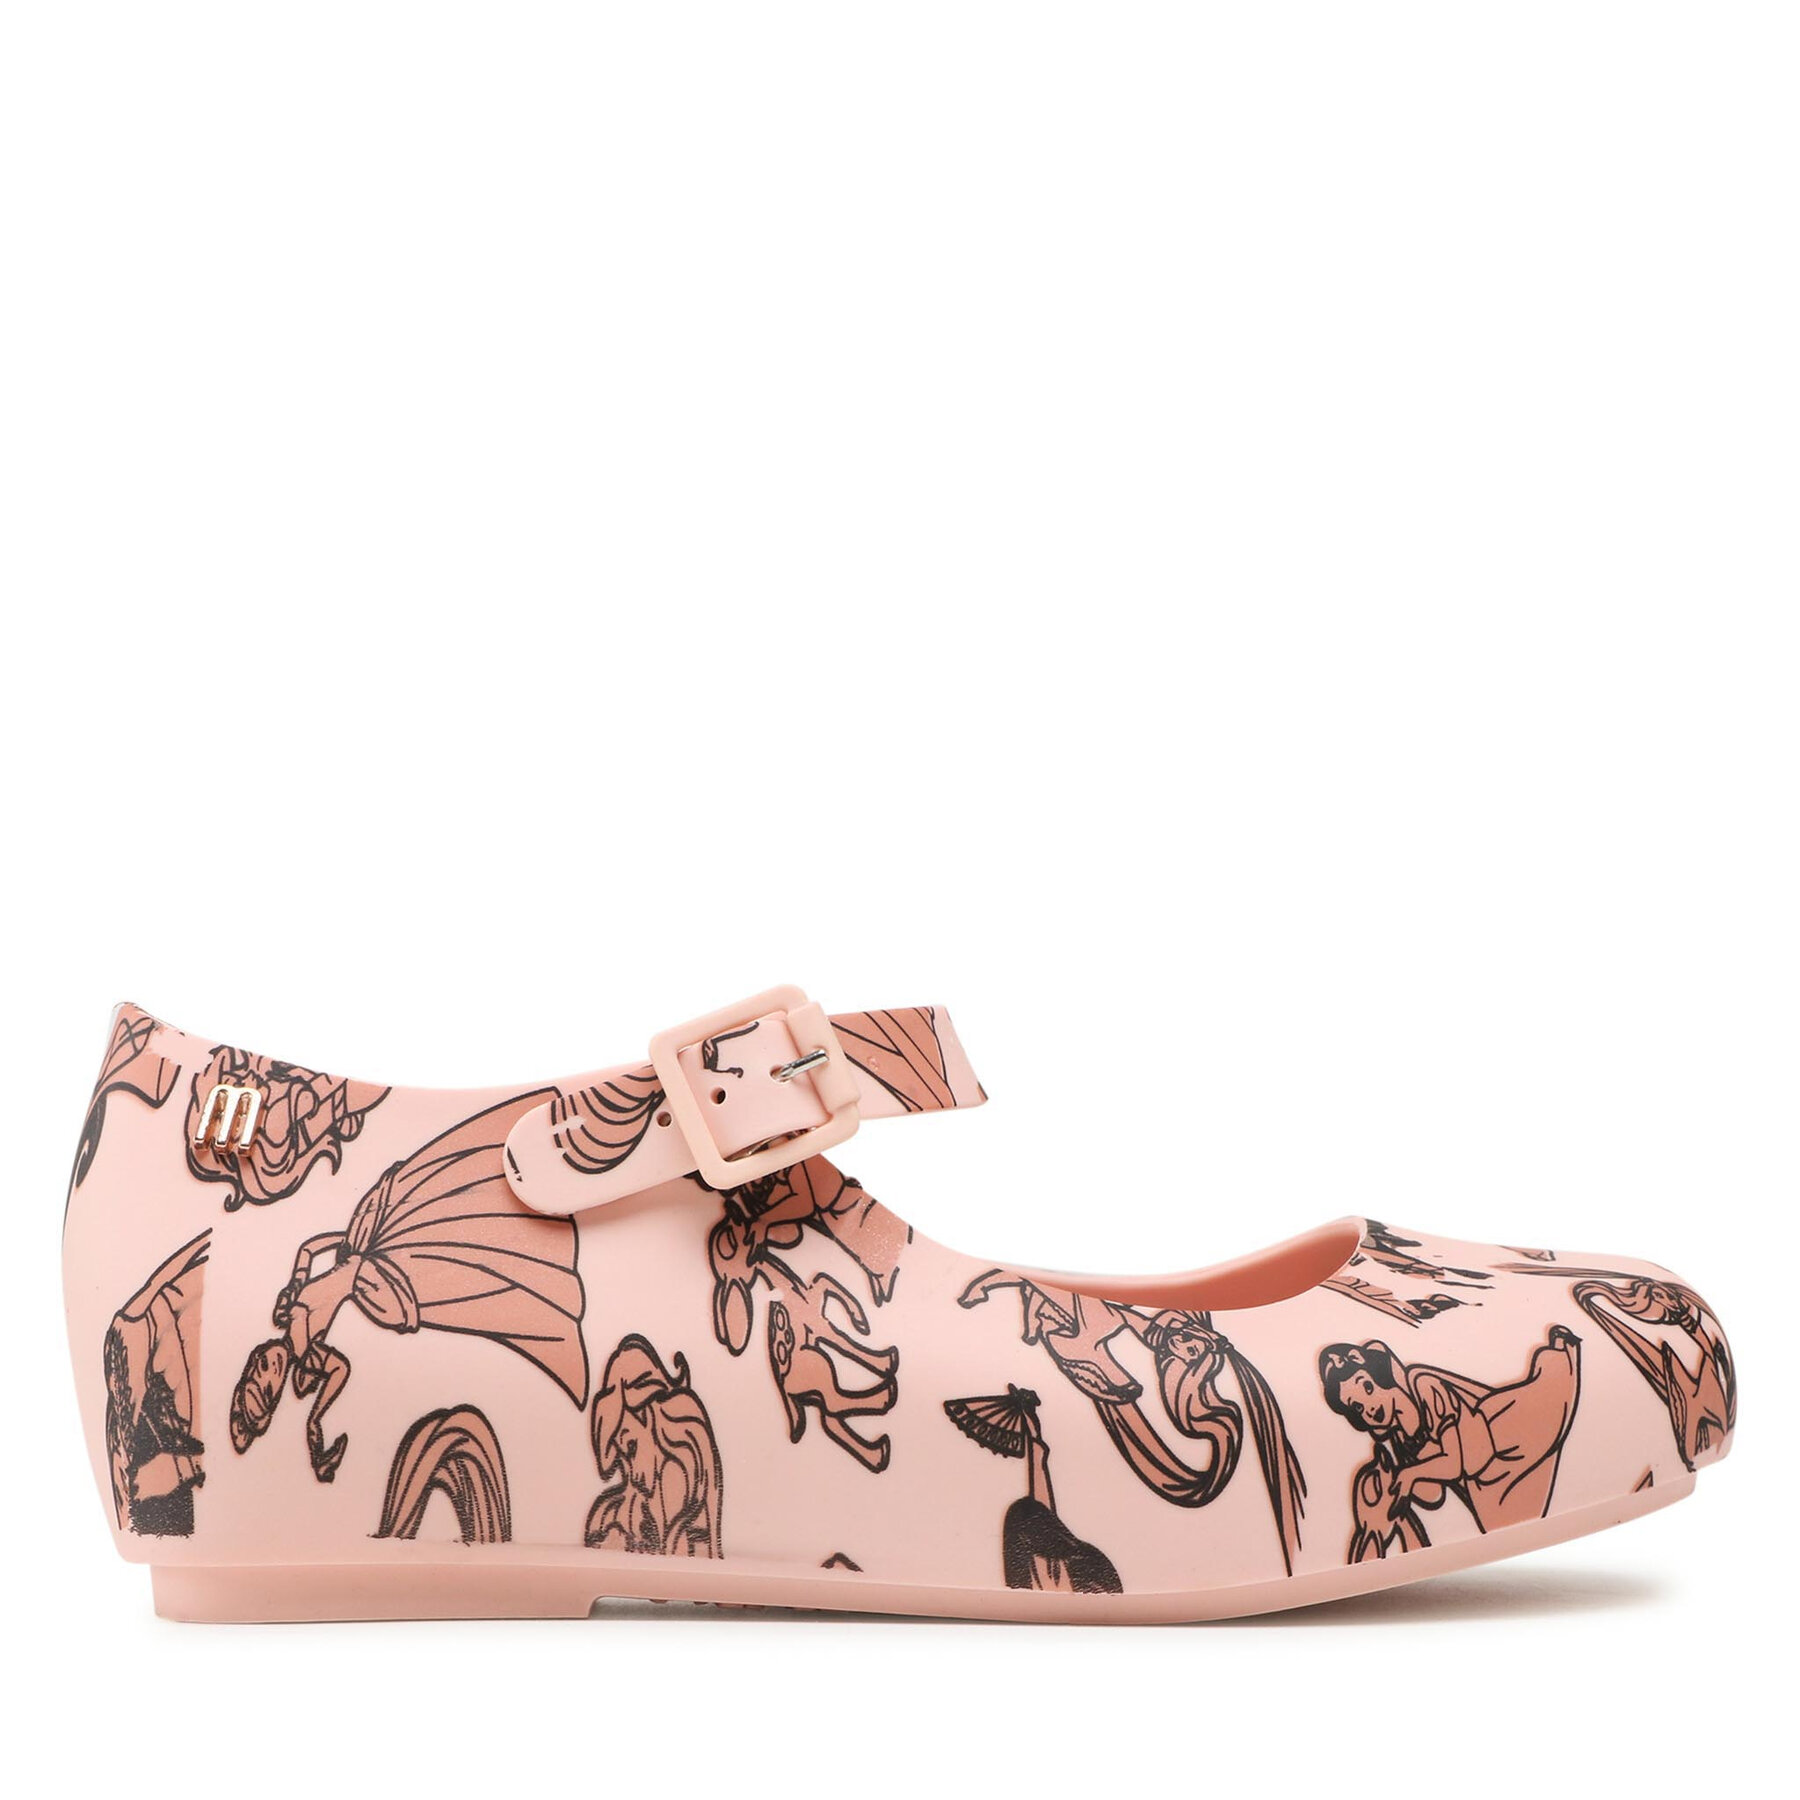 Comprar en oferta Melissa Mini Melissa Dora Disney Princess half shoes pink 33501